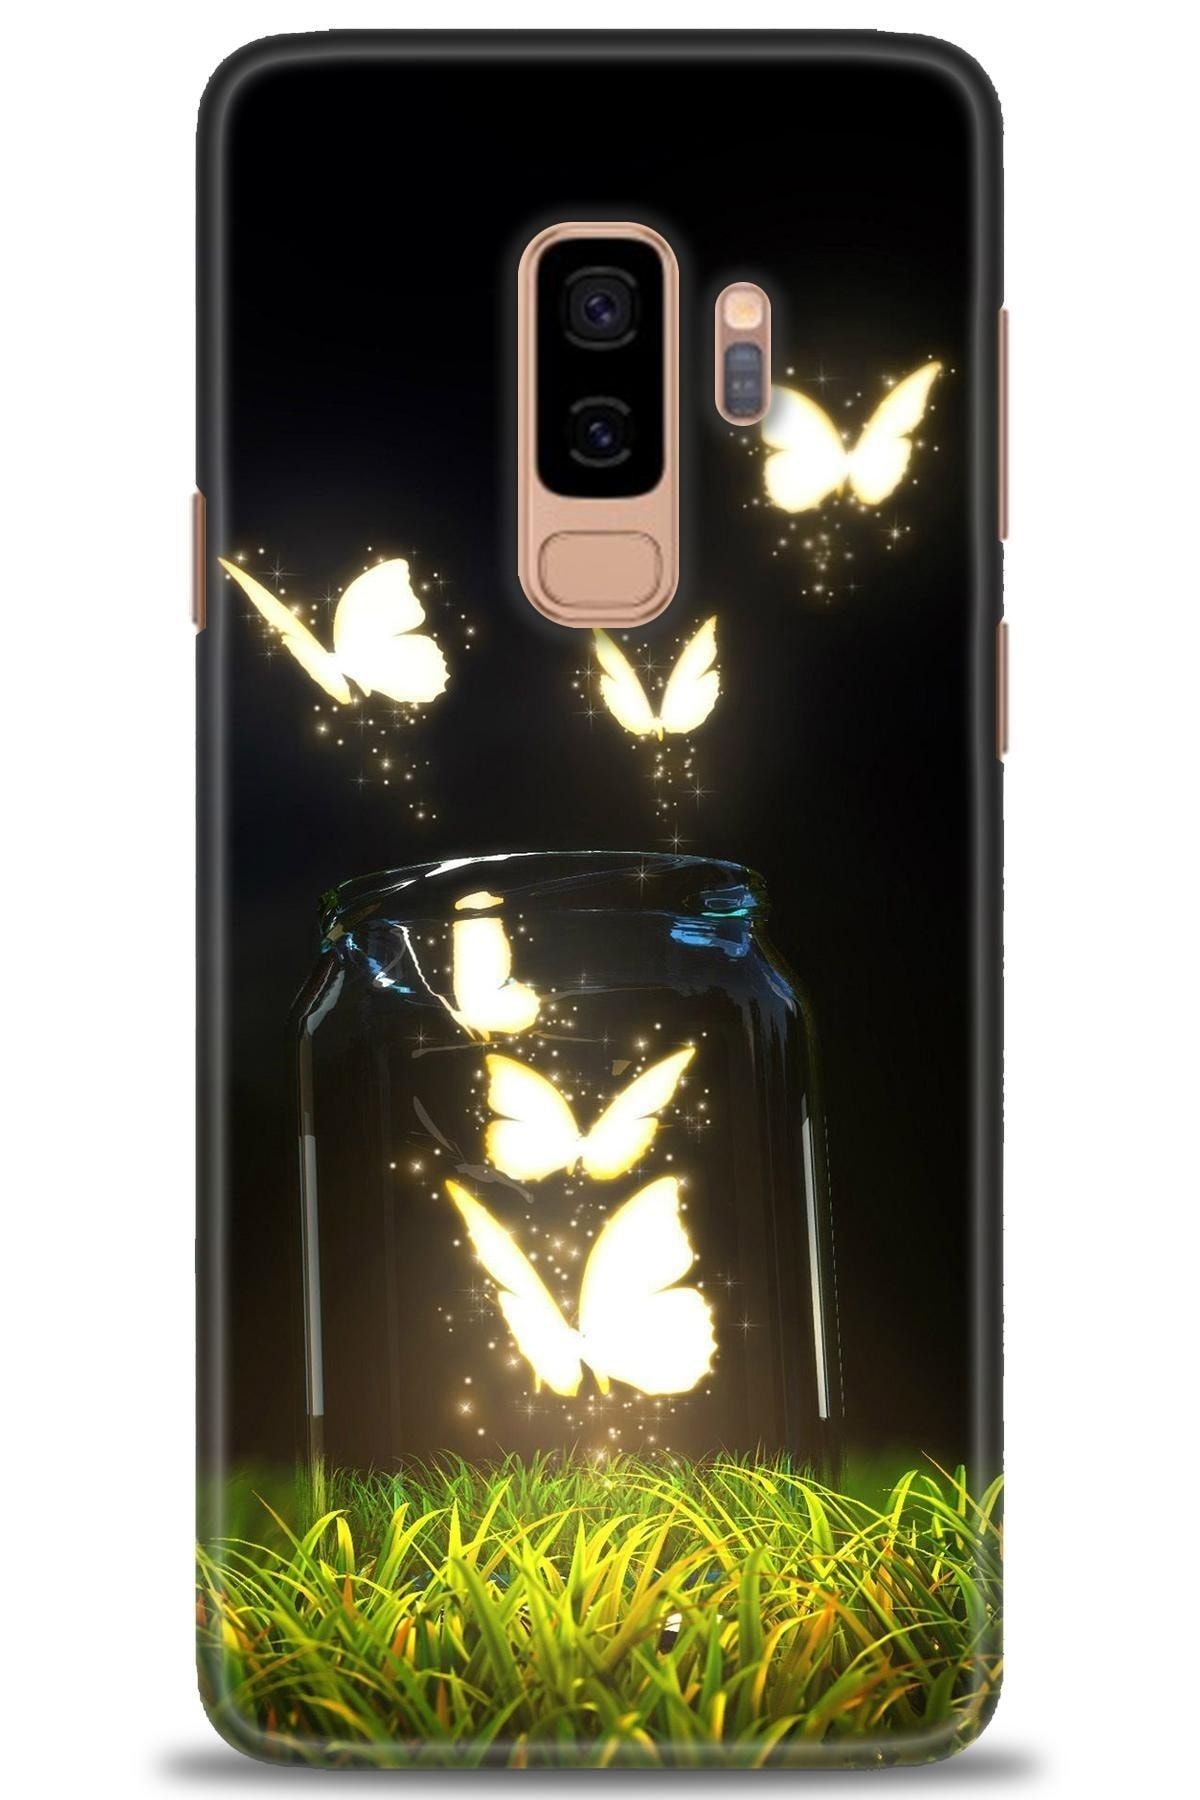 tugcepaksesuar Samsung Galaxy S9 Plus Kılıf Hd Baskılı Kılıf - Işıklı Kelebekler + 5d Seramik Ekran Koruyucu